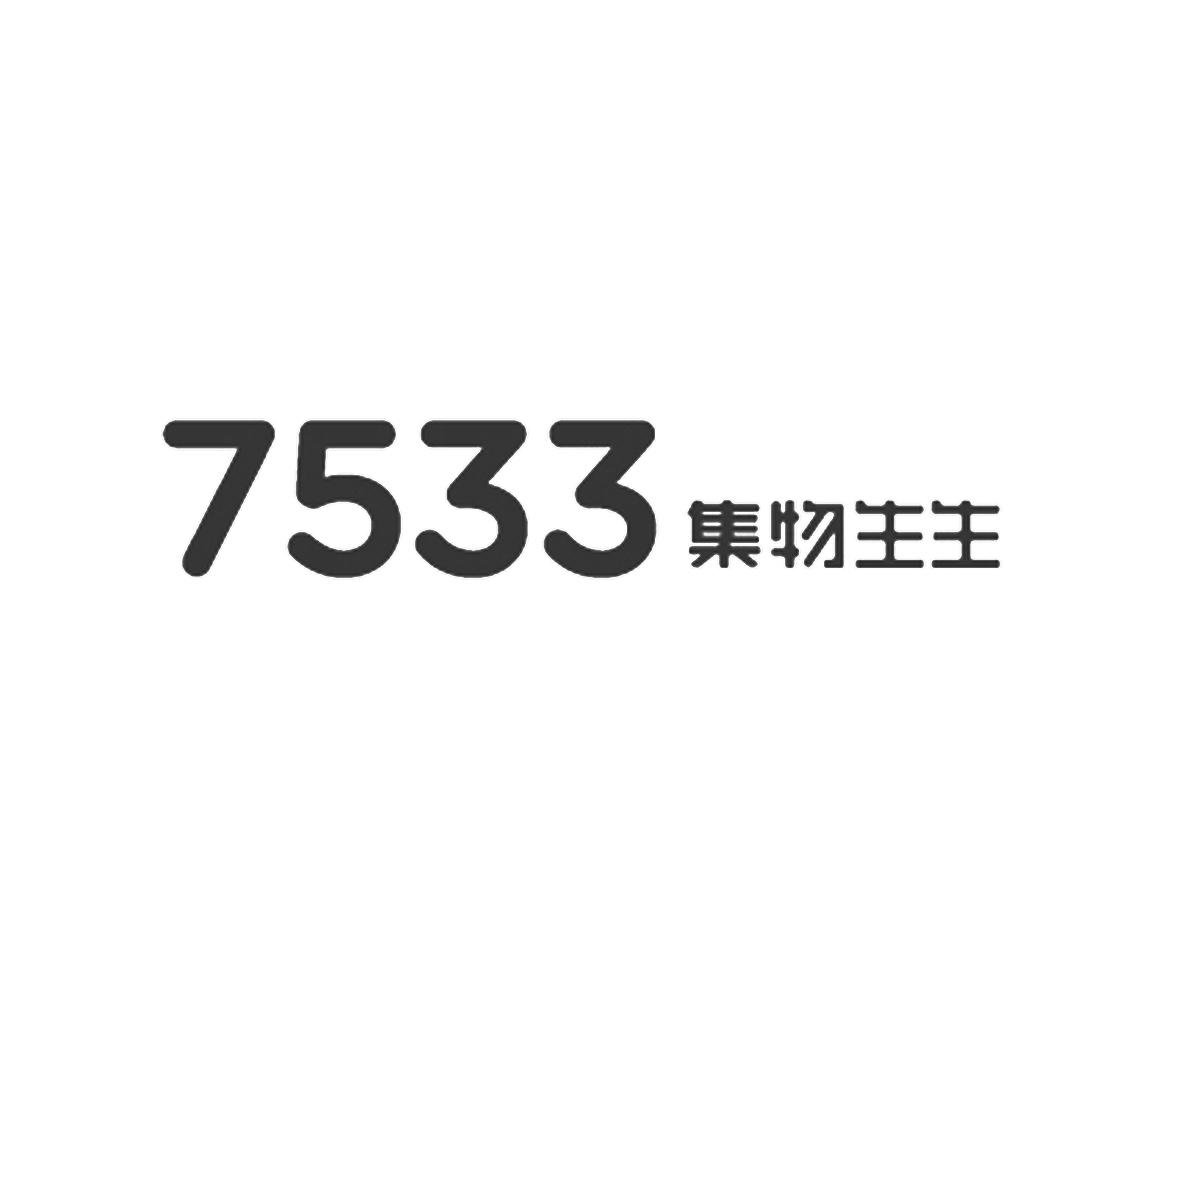 7533 集物生生